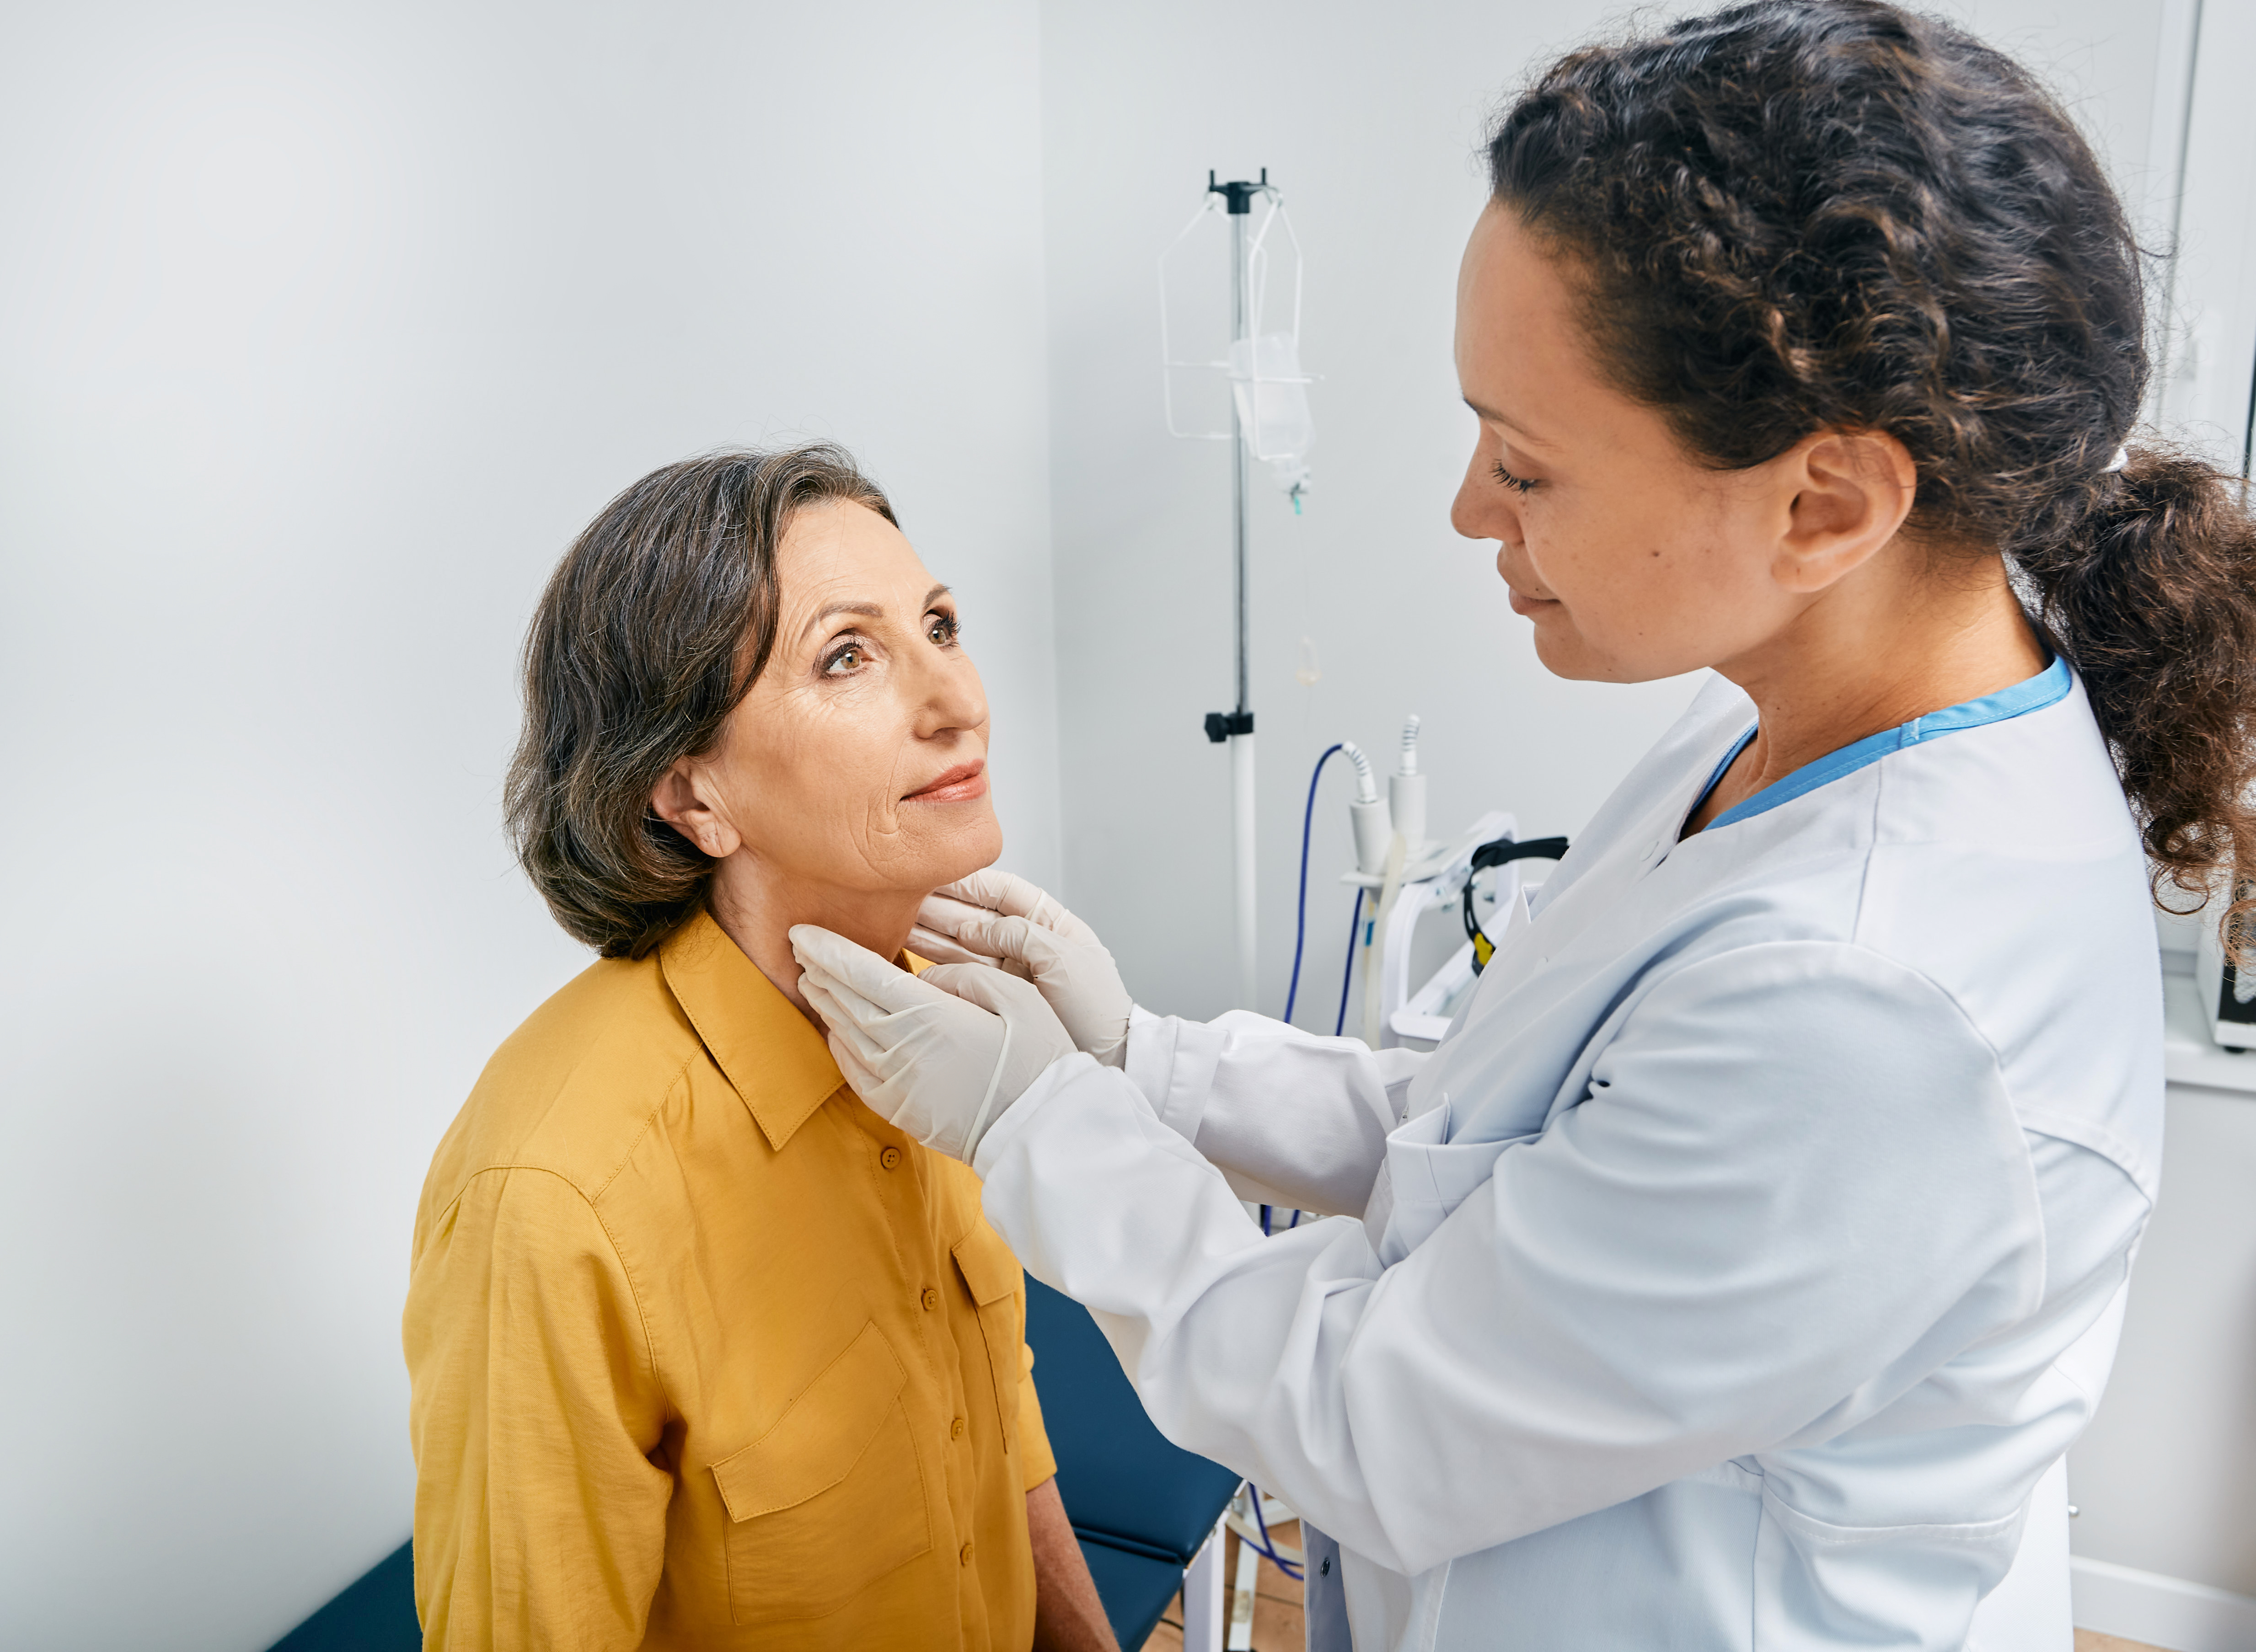 Pocas son las clínicas en donde los pacientes, especialmente mujeres, pueden encontrar un diagnóstico certero sobre padecimientos de la tiroides, como en Quetzaltenango. (Foto Prensa Libre: Shutterstock).